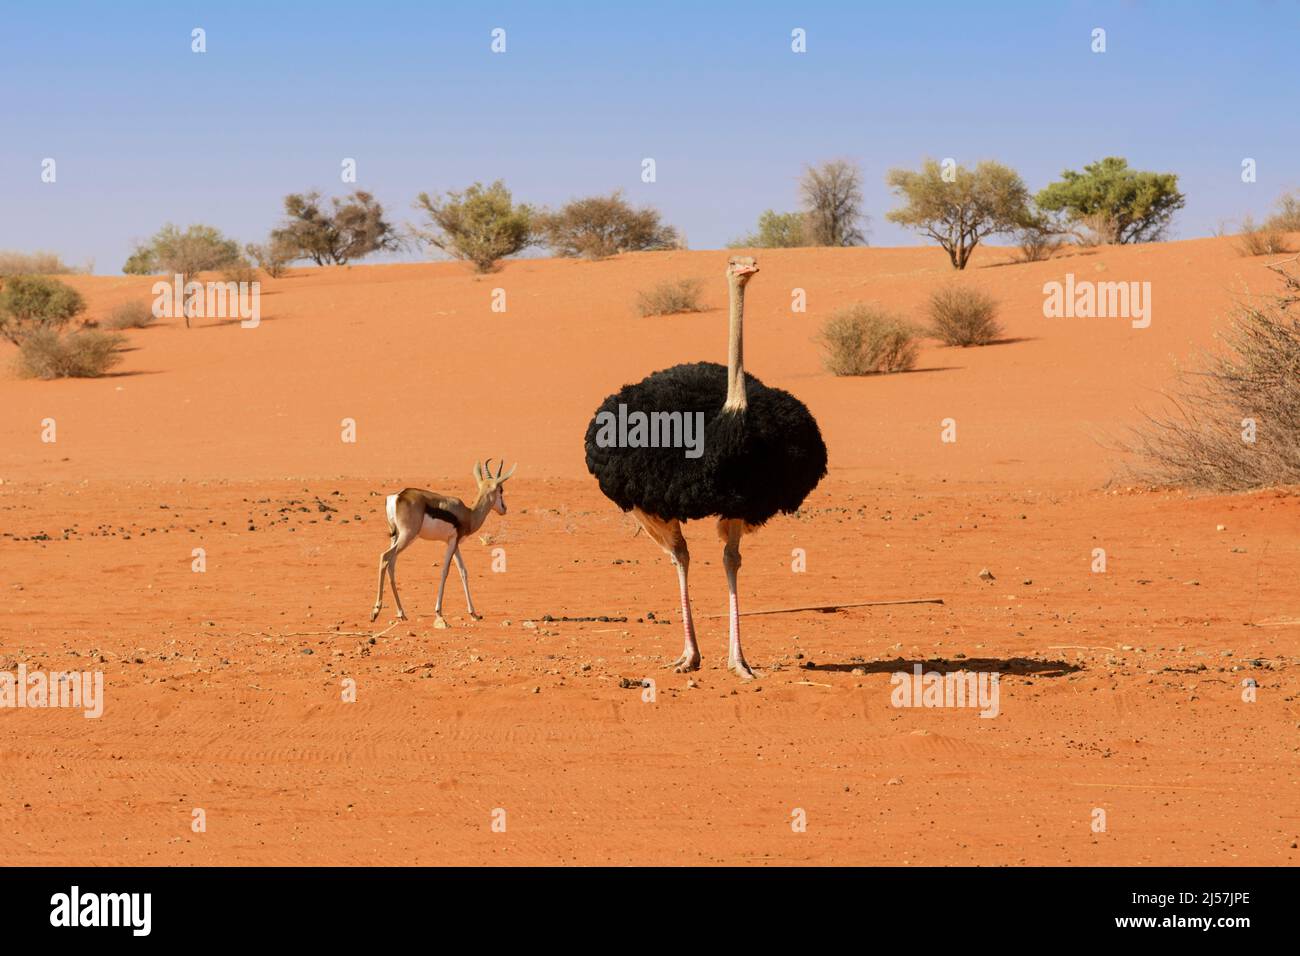 Un autruche (Struthio camelus) et un antilope de printemps (Antidorcas marsupialis) marchant dans le désert de Kalahari, Namibie, Afrique du Sud-Ouest Banque D'Images